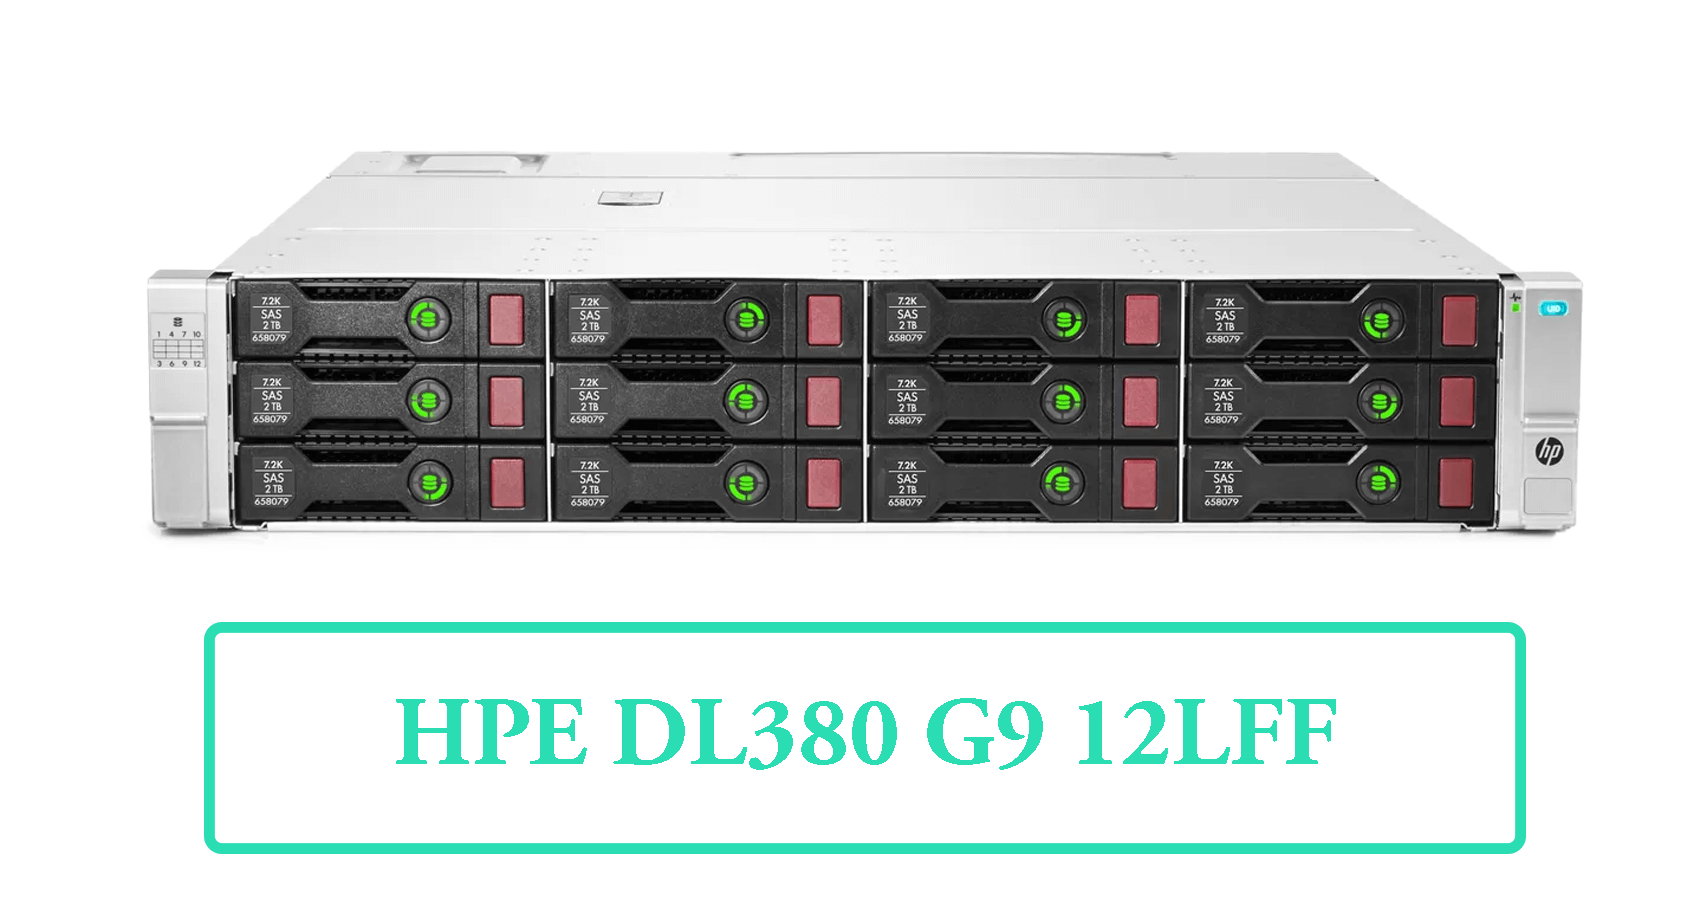 سرور HP DL380 G9 12LFF